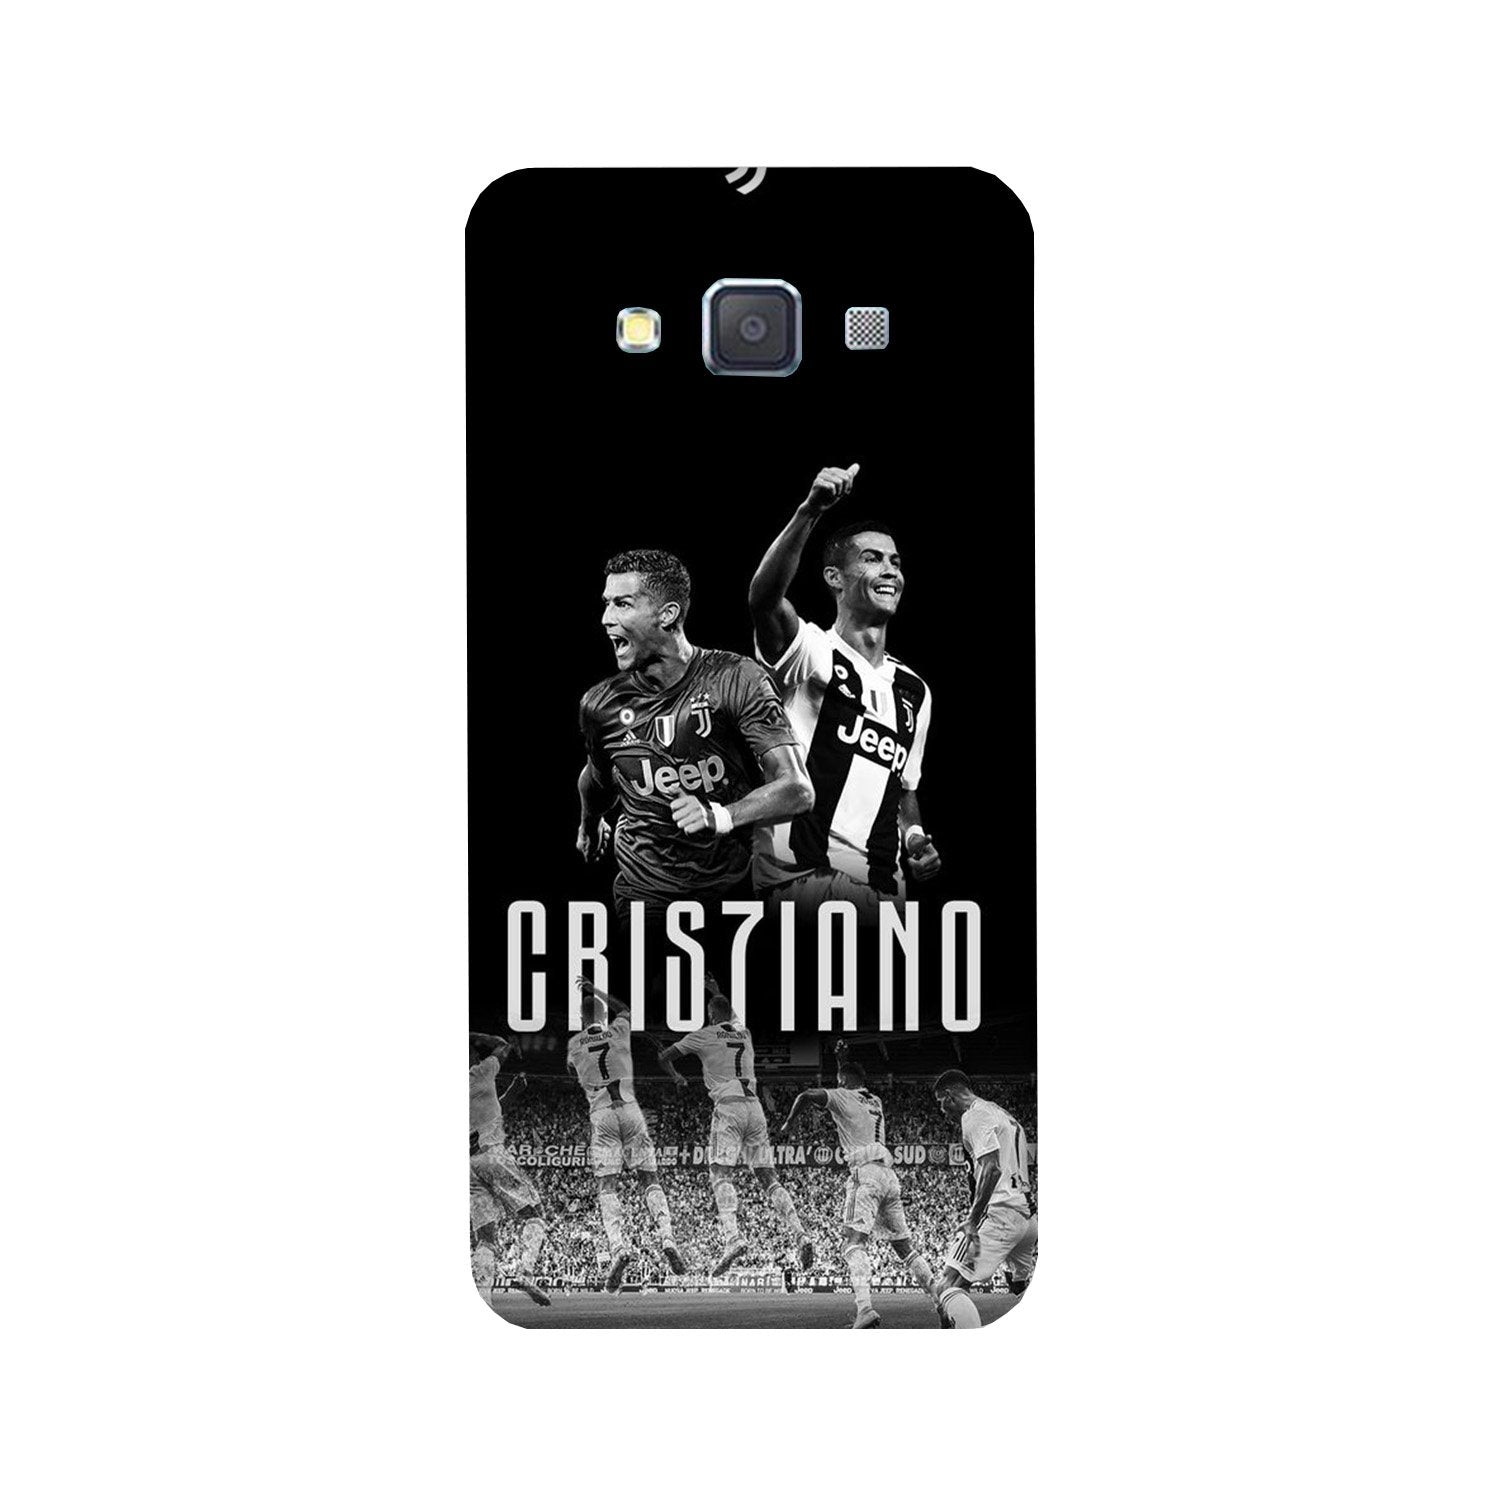 Cristiano Case for Galaxy Grand 2(Design - 165)